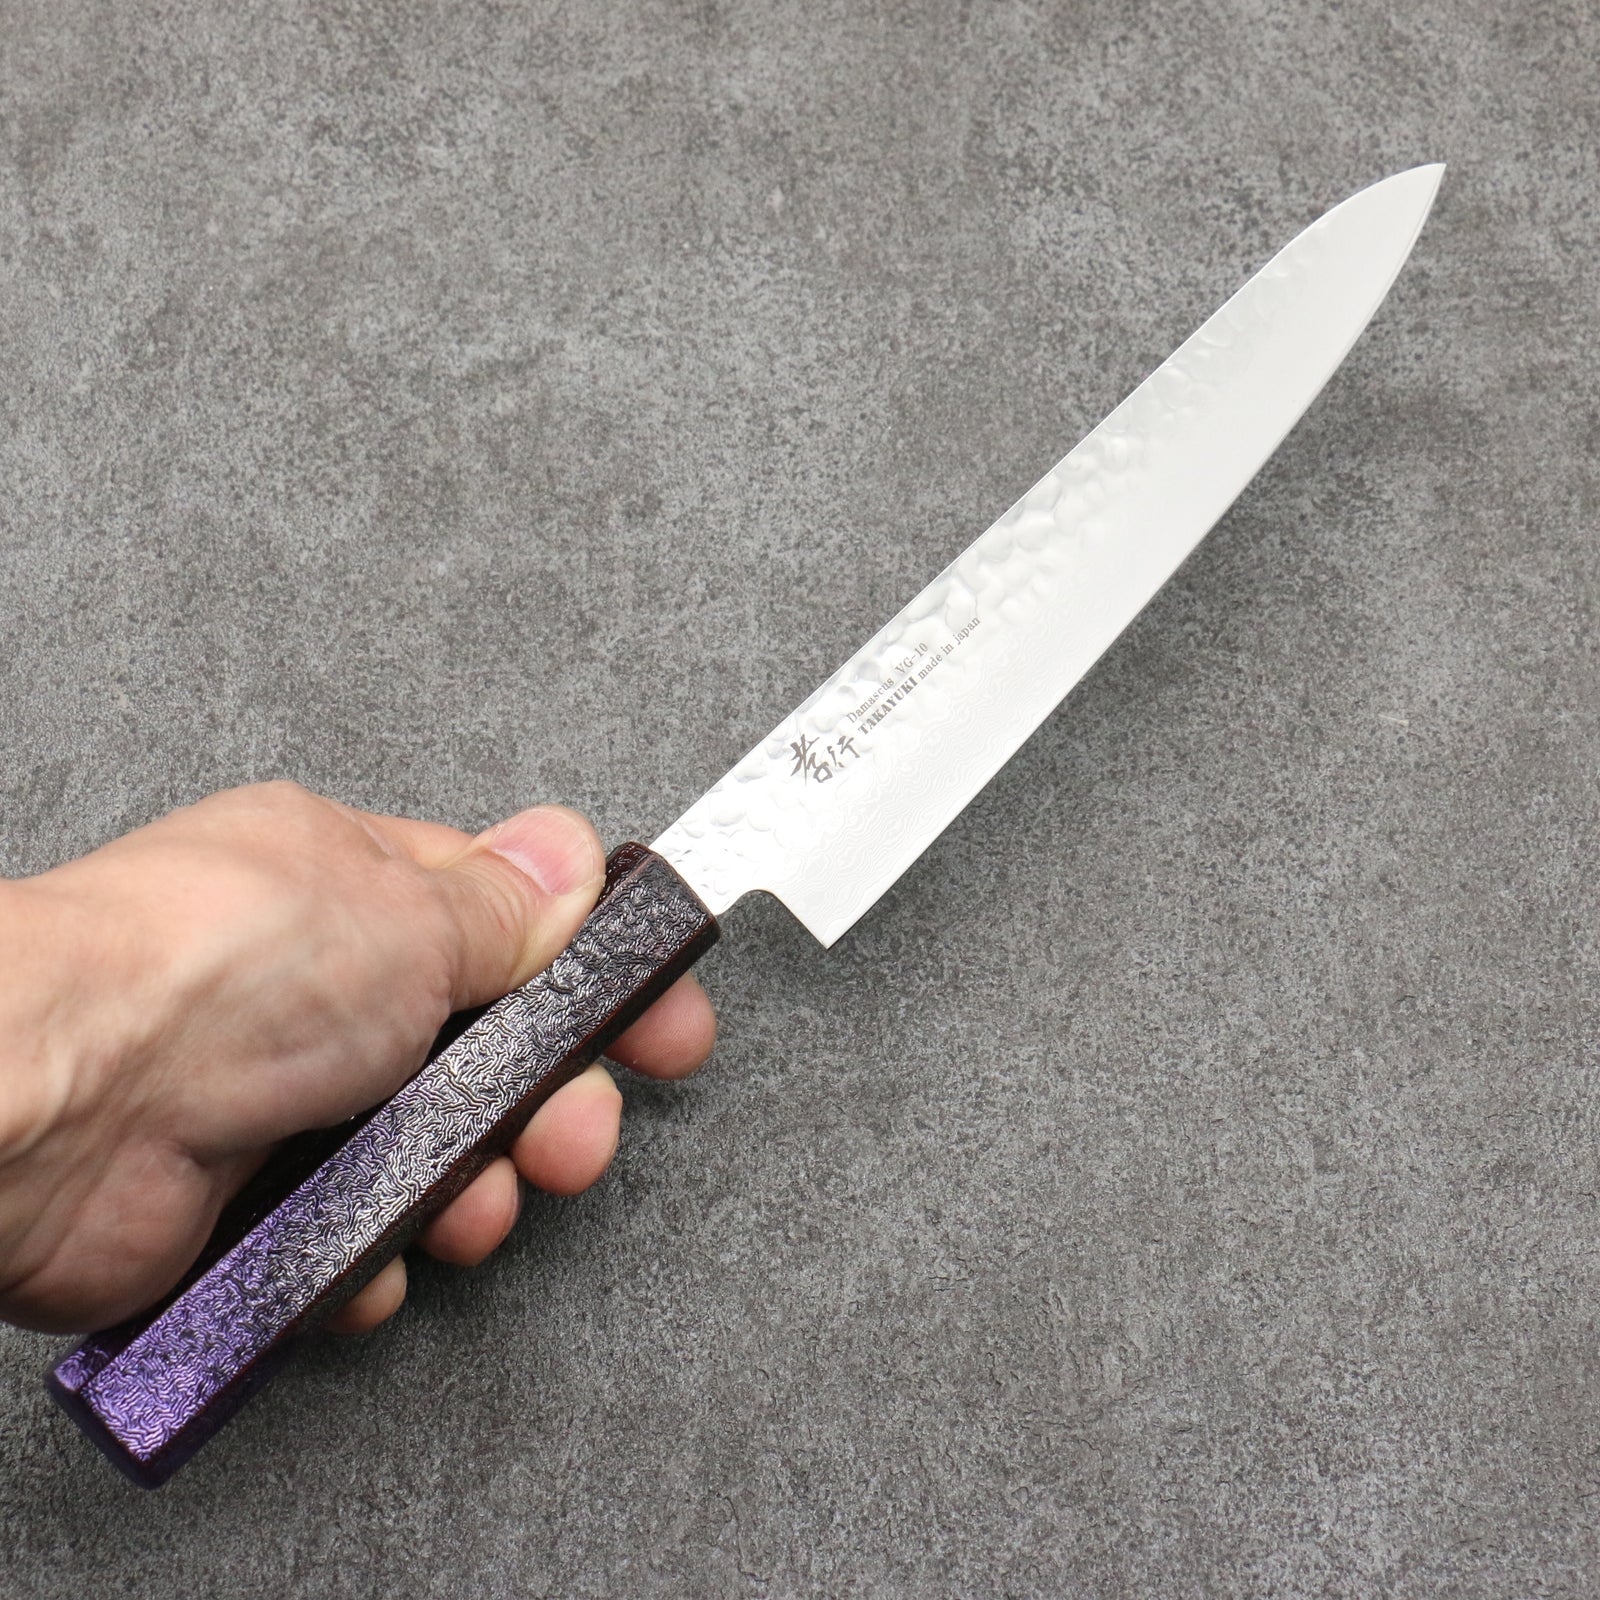 Sakai Takayuki Rinnou VG10 33 Layer Damascus Petty-Utility Japanese Knife 180mm Purple Lacquered Handle